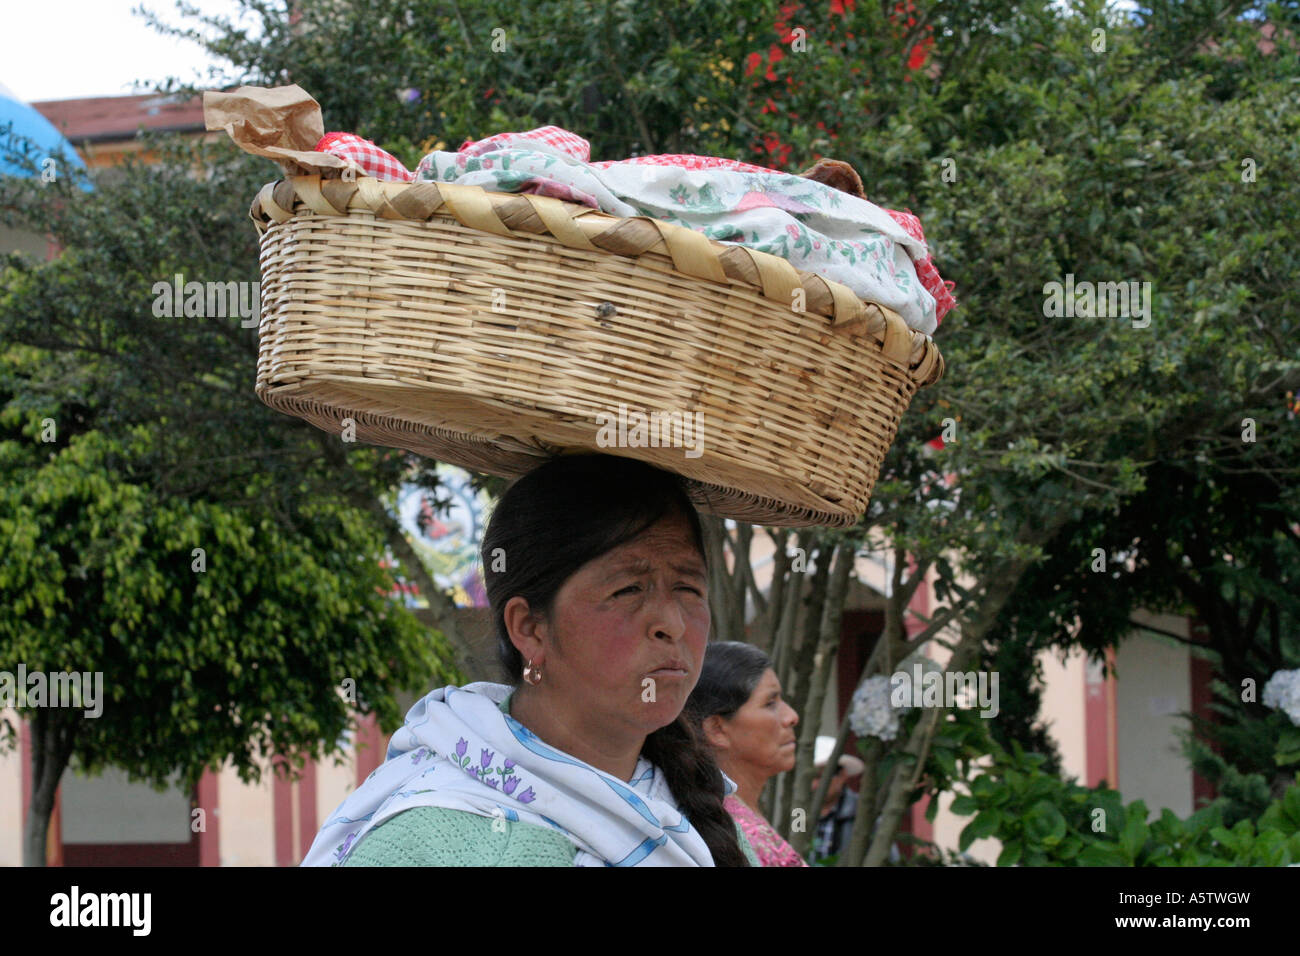 Painet jj1557 Guatemala Straße Verkäufer tragen Lebensmittel Kopf San Pedro Sacatepequez Lateinamerika Mittelamerika Arbeit Arbeit Stockfoto